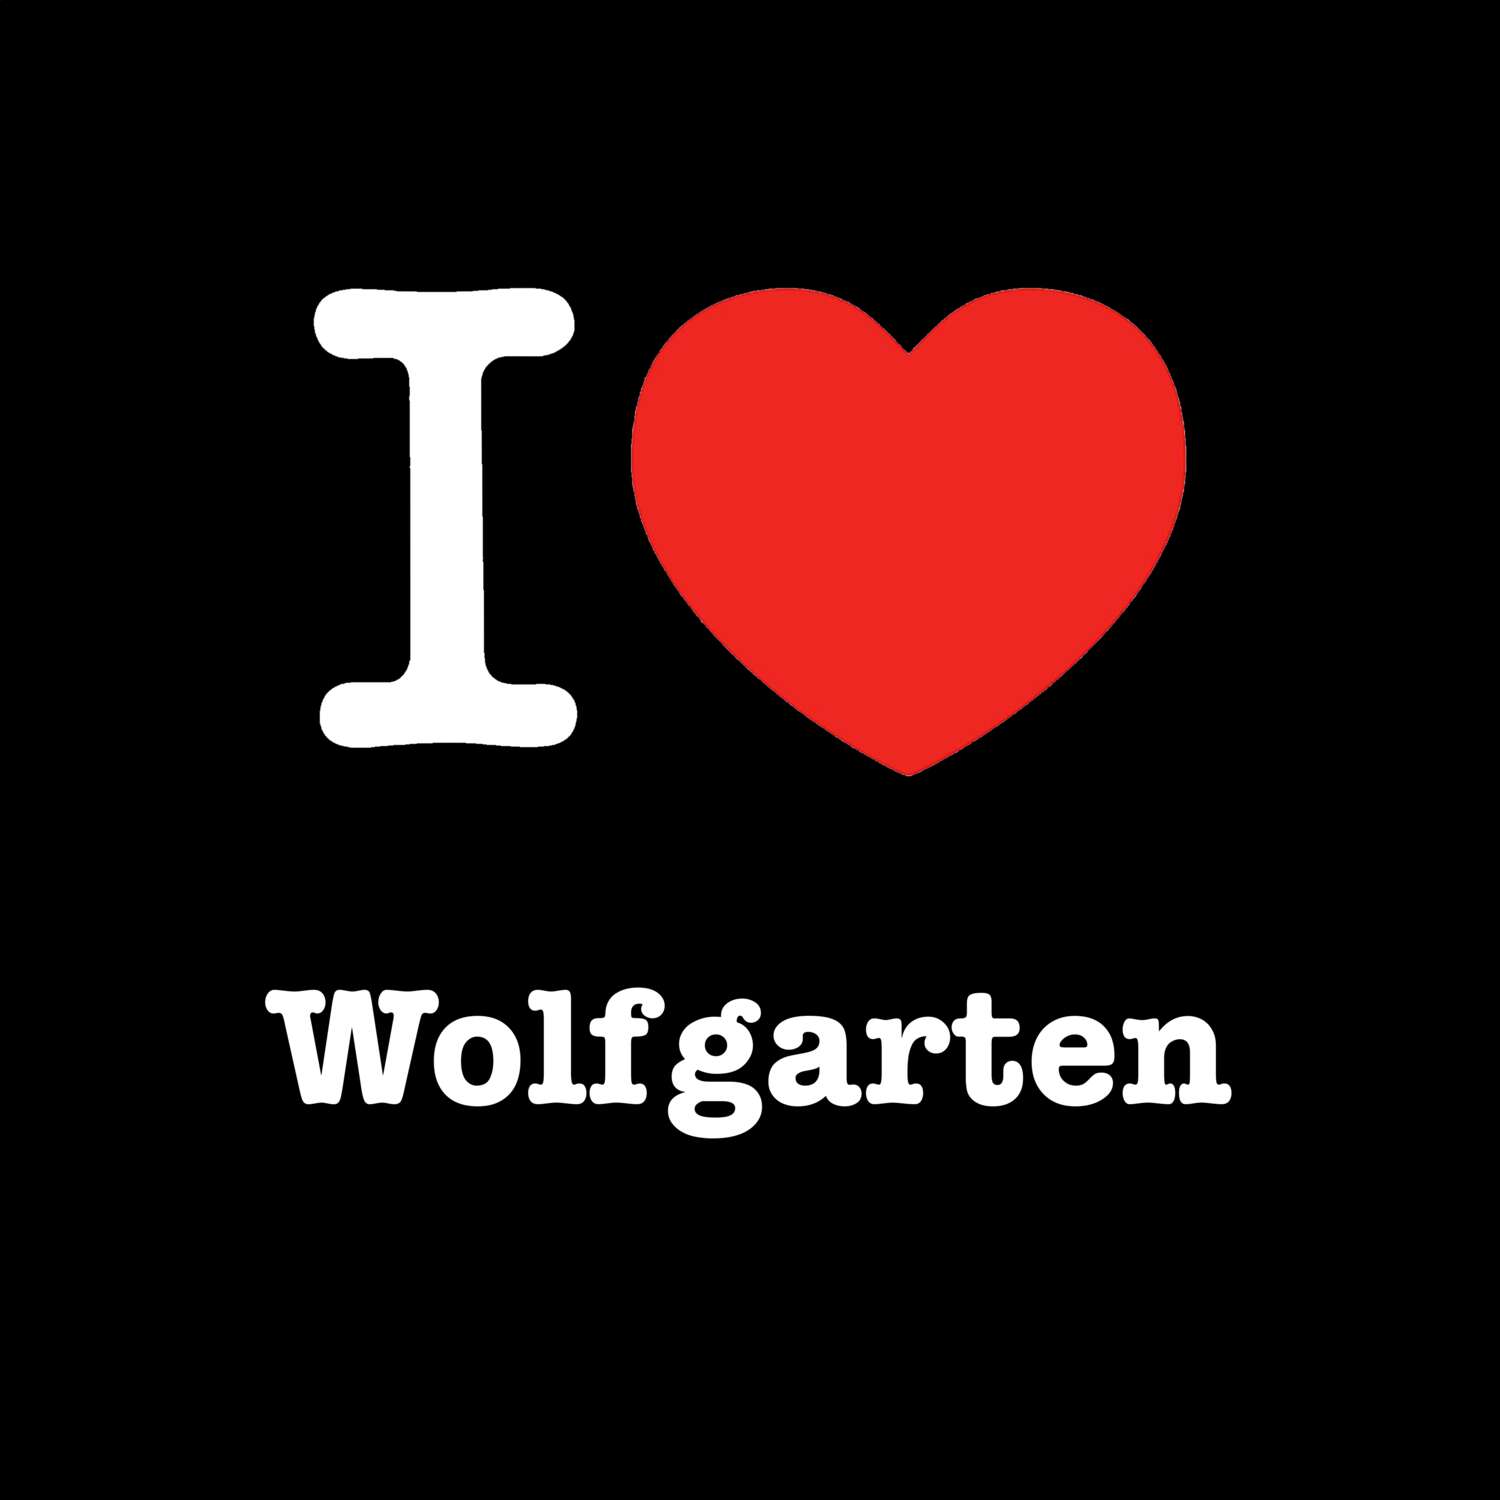 Wolfgarten T-Shirt »I love«